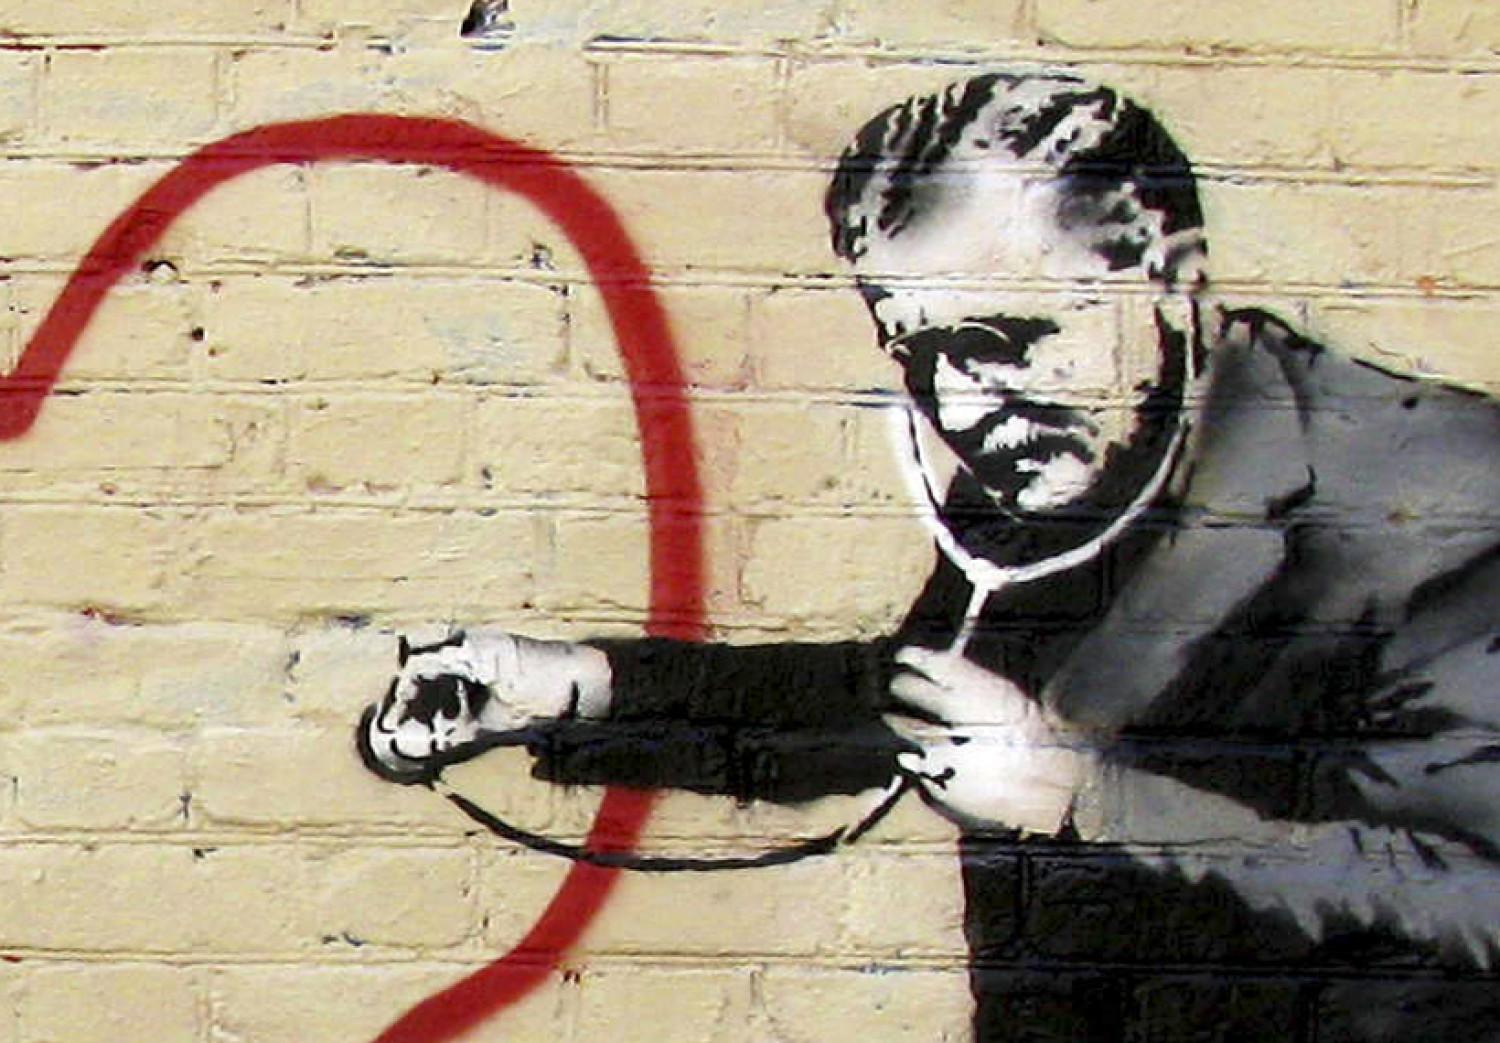 Cuadro decorativo Médico pacifista (Banksy) - en pared ladrillos